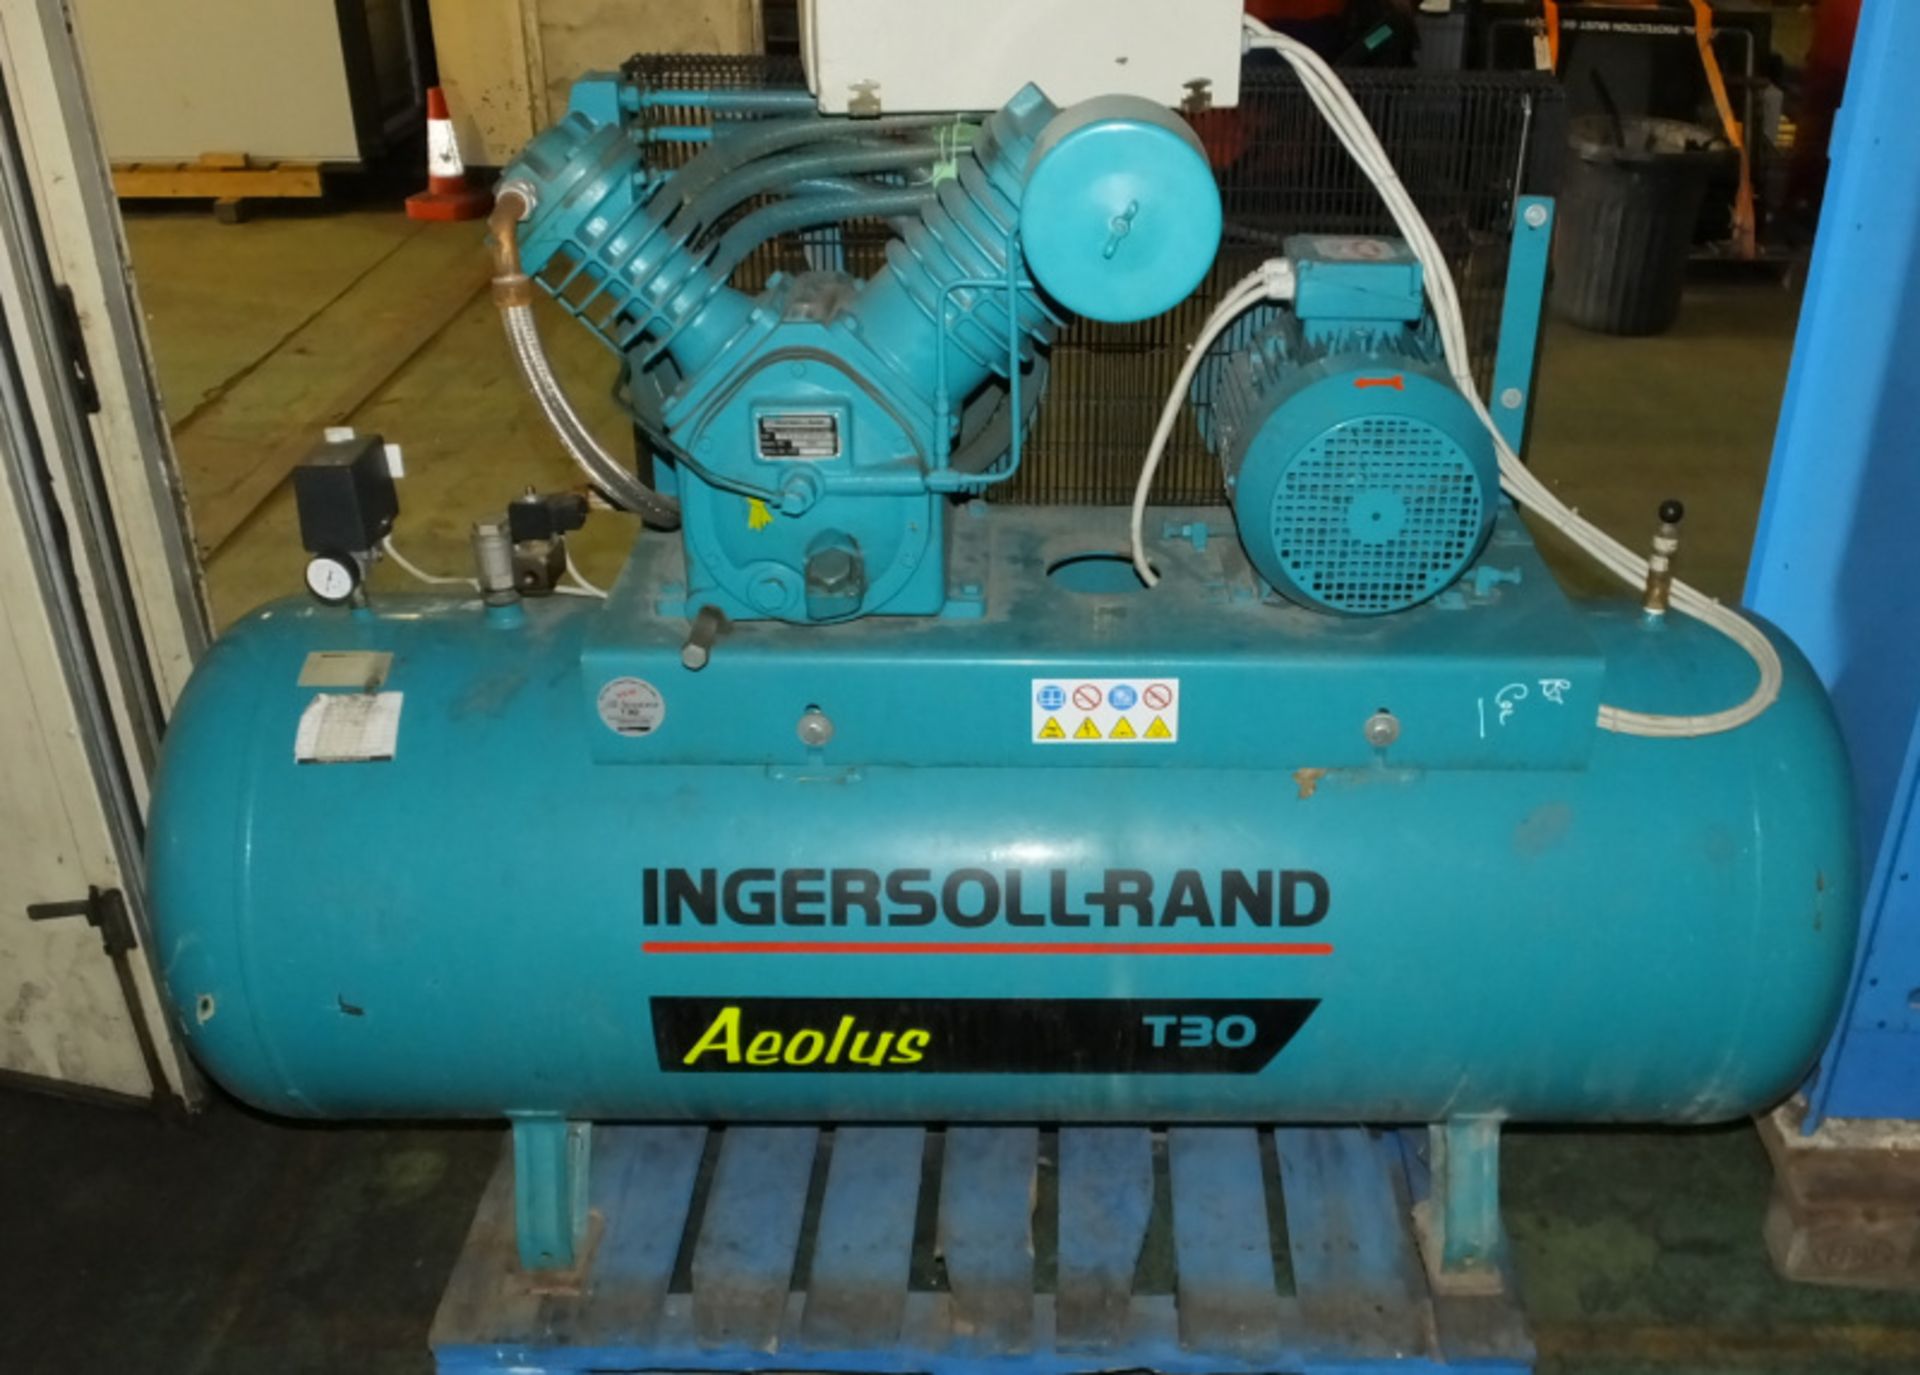 Ingersoll-Rand Aeolus T30 compressor - 500L - 14bar